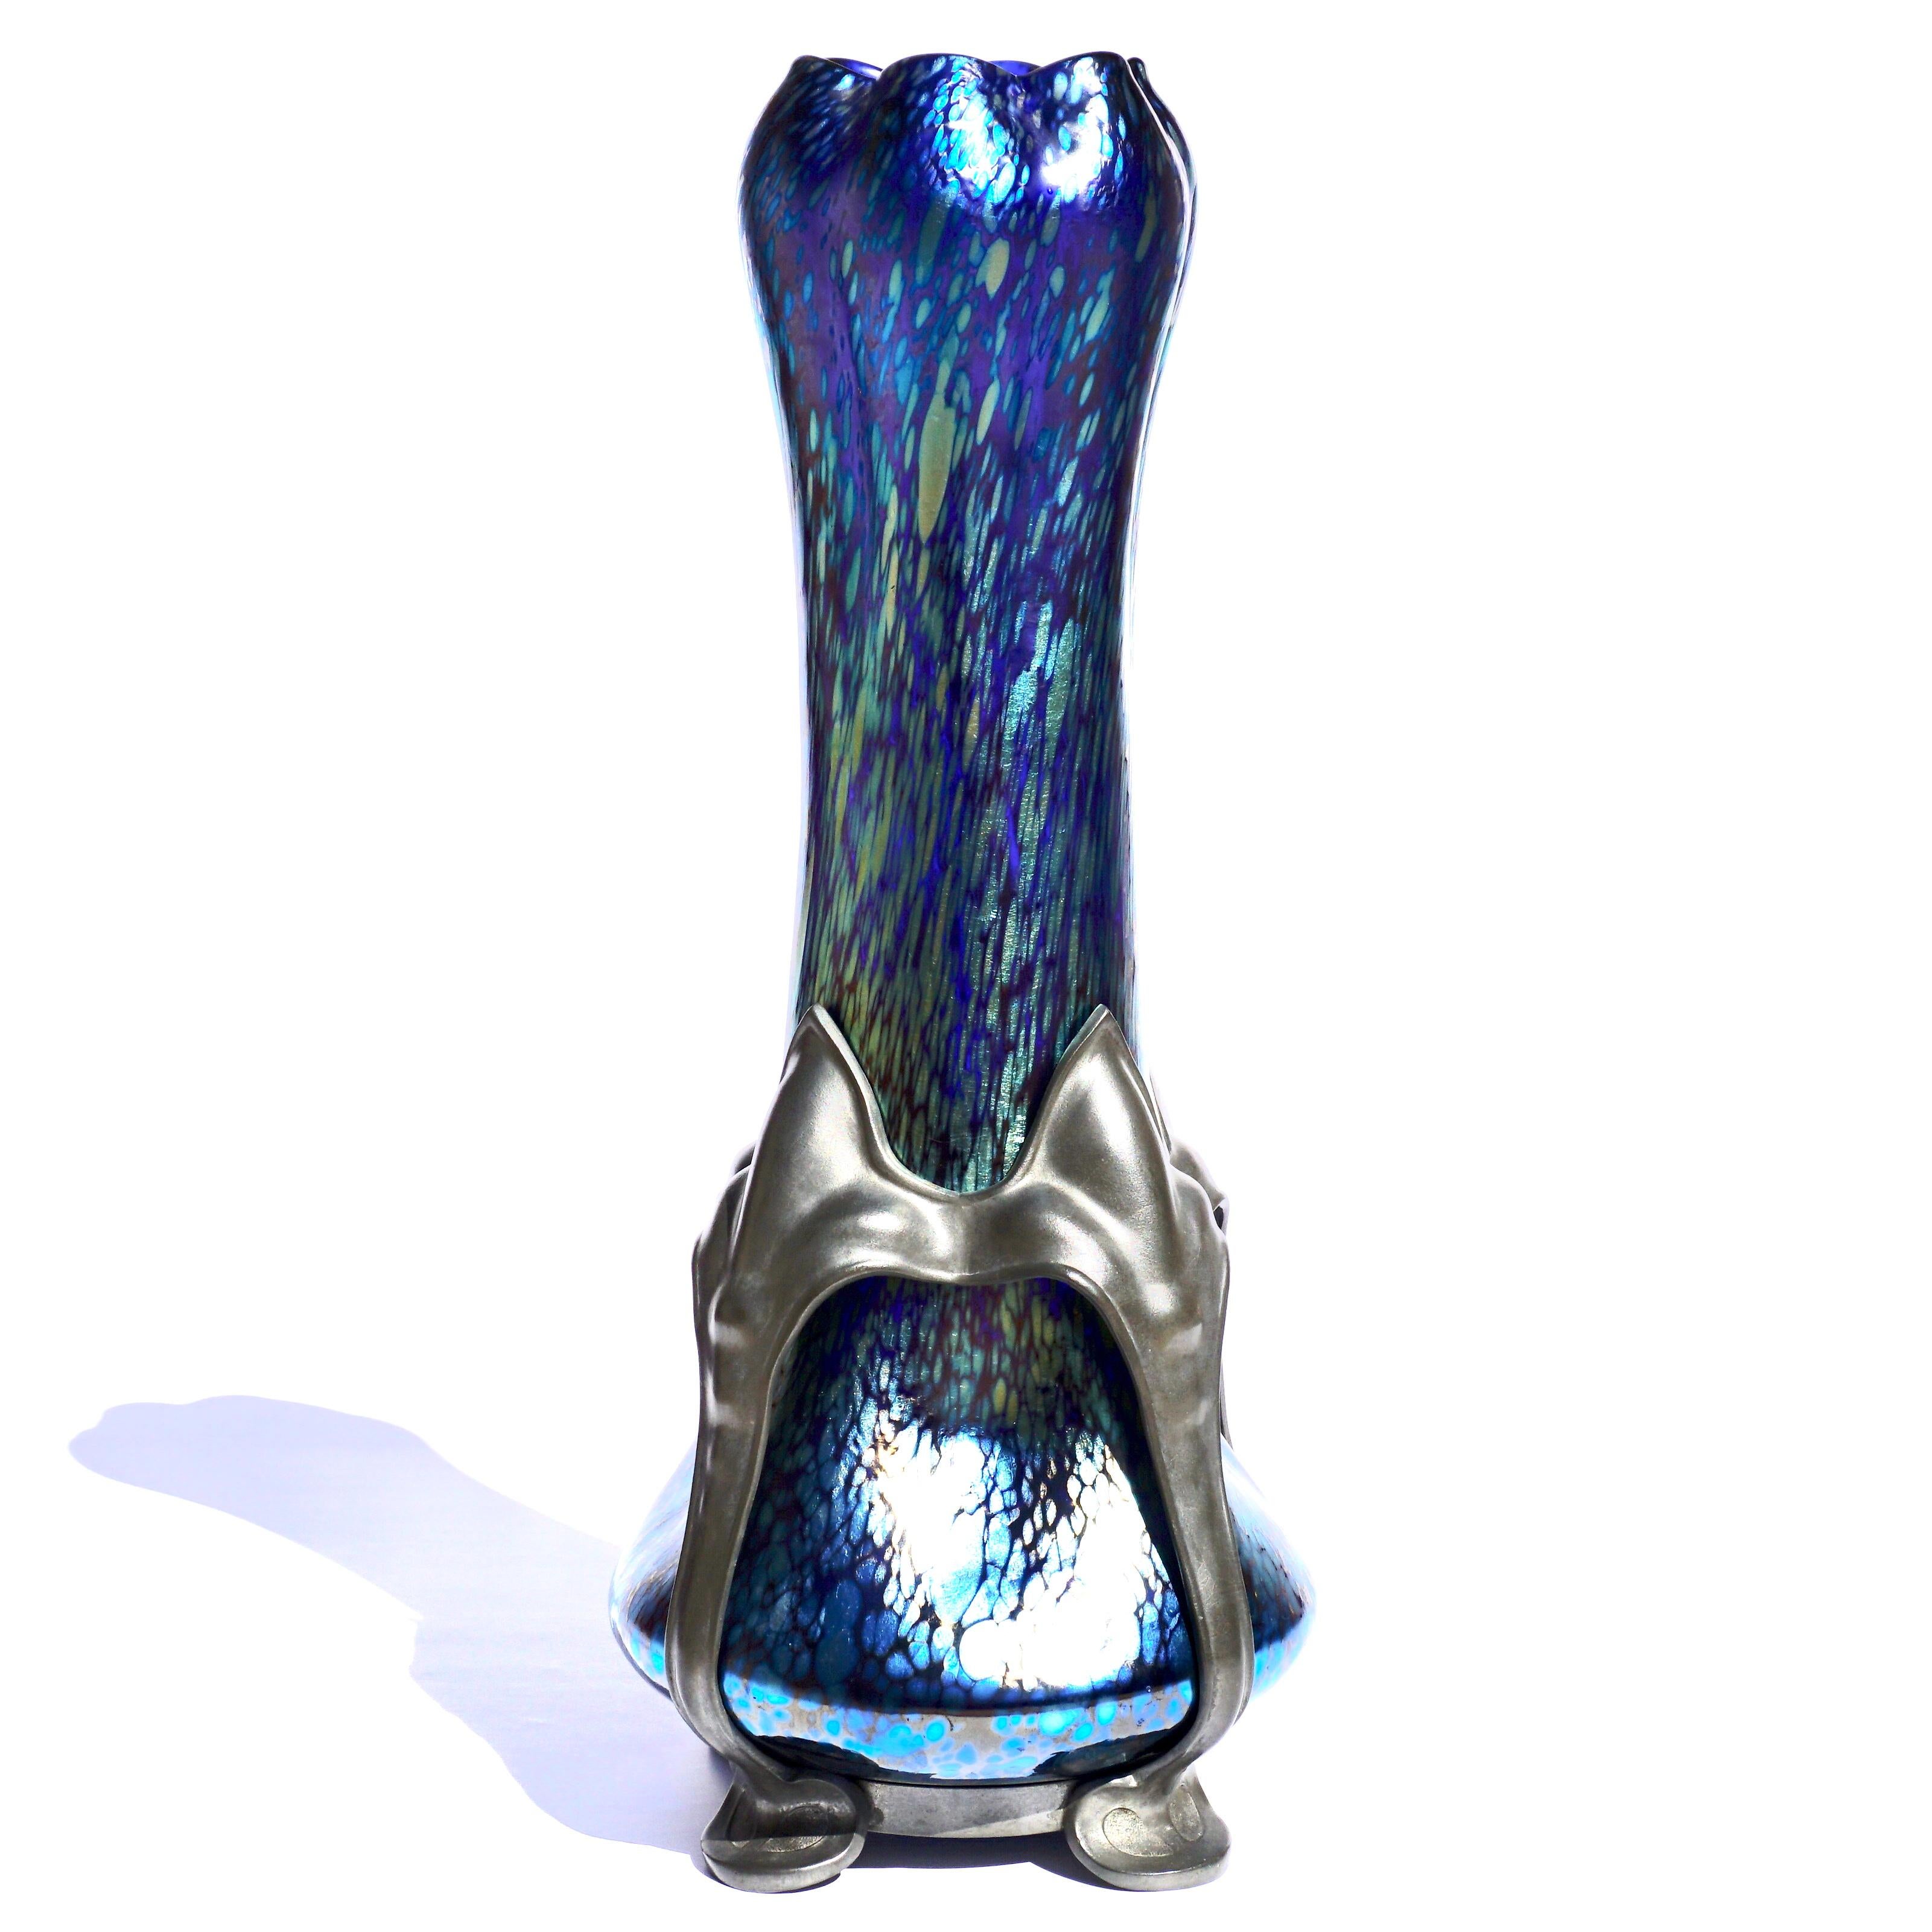 Eine Loetz Kobalt Papillon Kunstglas und Zinn Jugendstil Vase. CIRCA 1900

Das formschöne Design mit ausgestelltem Sockel, der vier gleichmäßig verteilte Einbuchtungen unter schrägen Seiten aufweist, die sich zu einem geschwollenen, in sechs